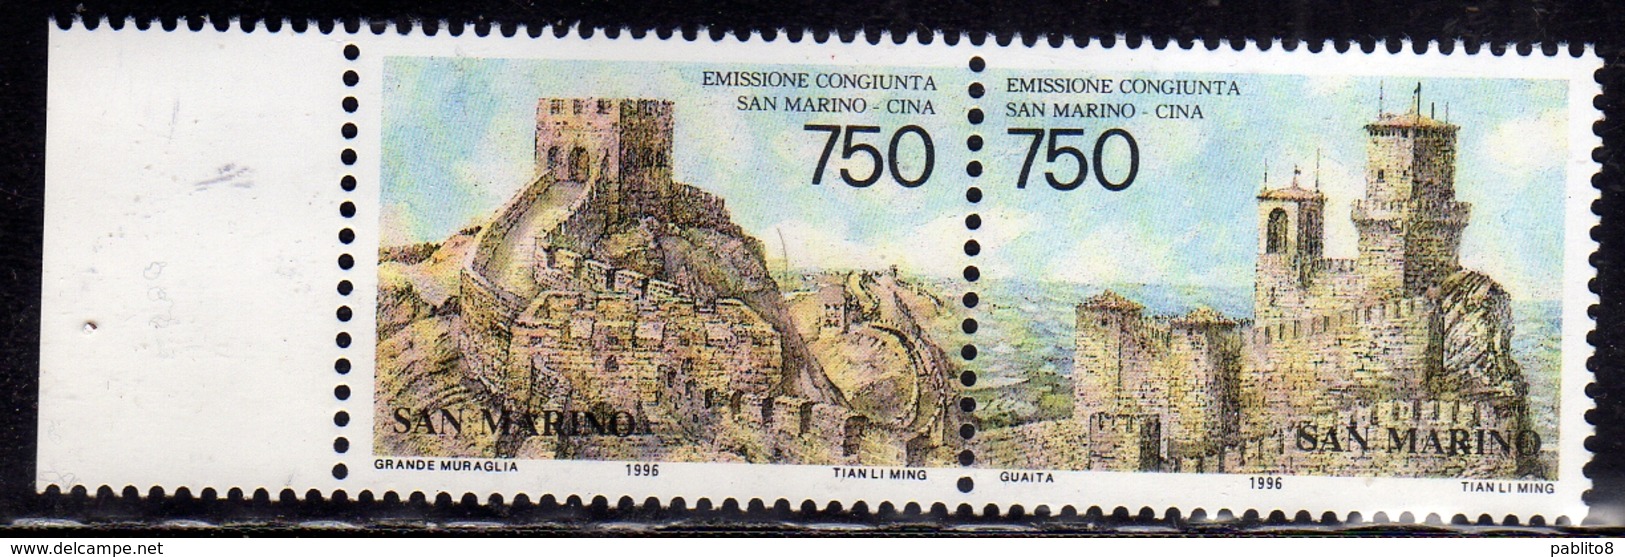 REPUBBLICA DI SAN MARINO 1996 RAPPORTI TRA SAN MARINO E CINA RELATIONS WITH CHINA SERIE COMPLETA COMPLETE SET MNH - Unused Stamps